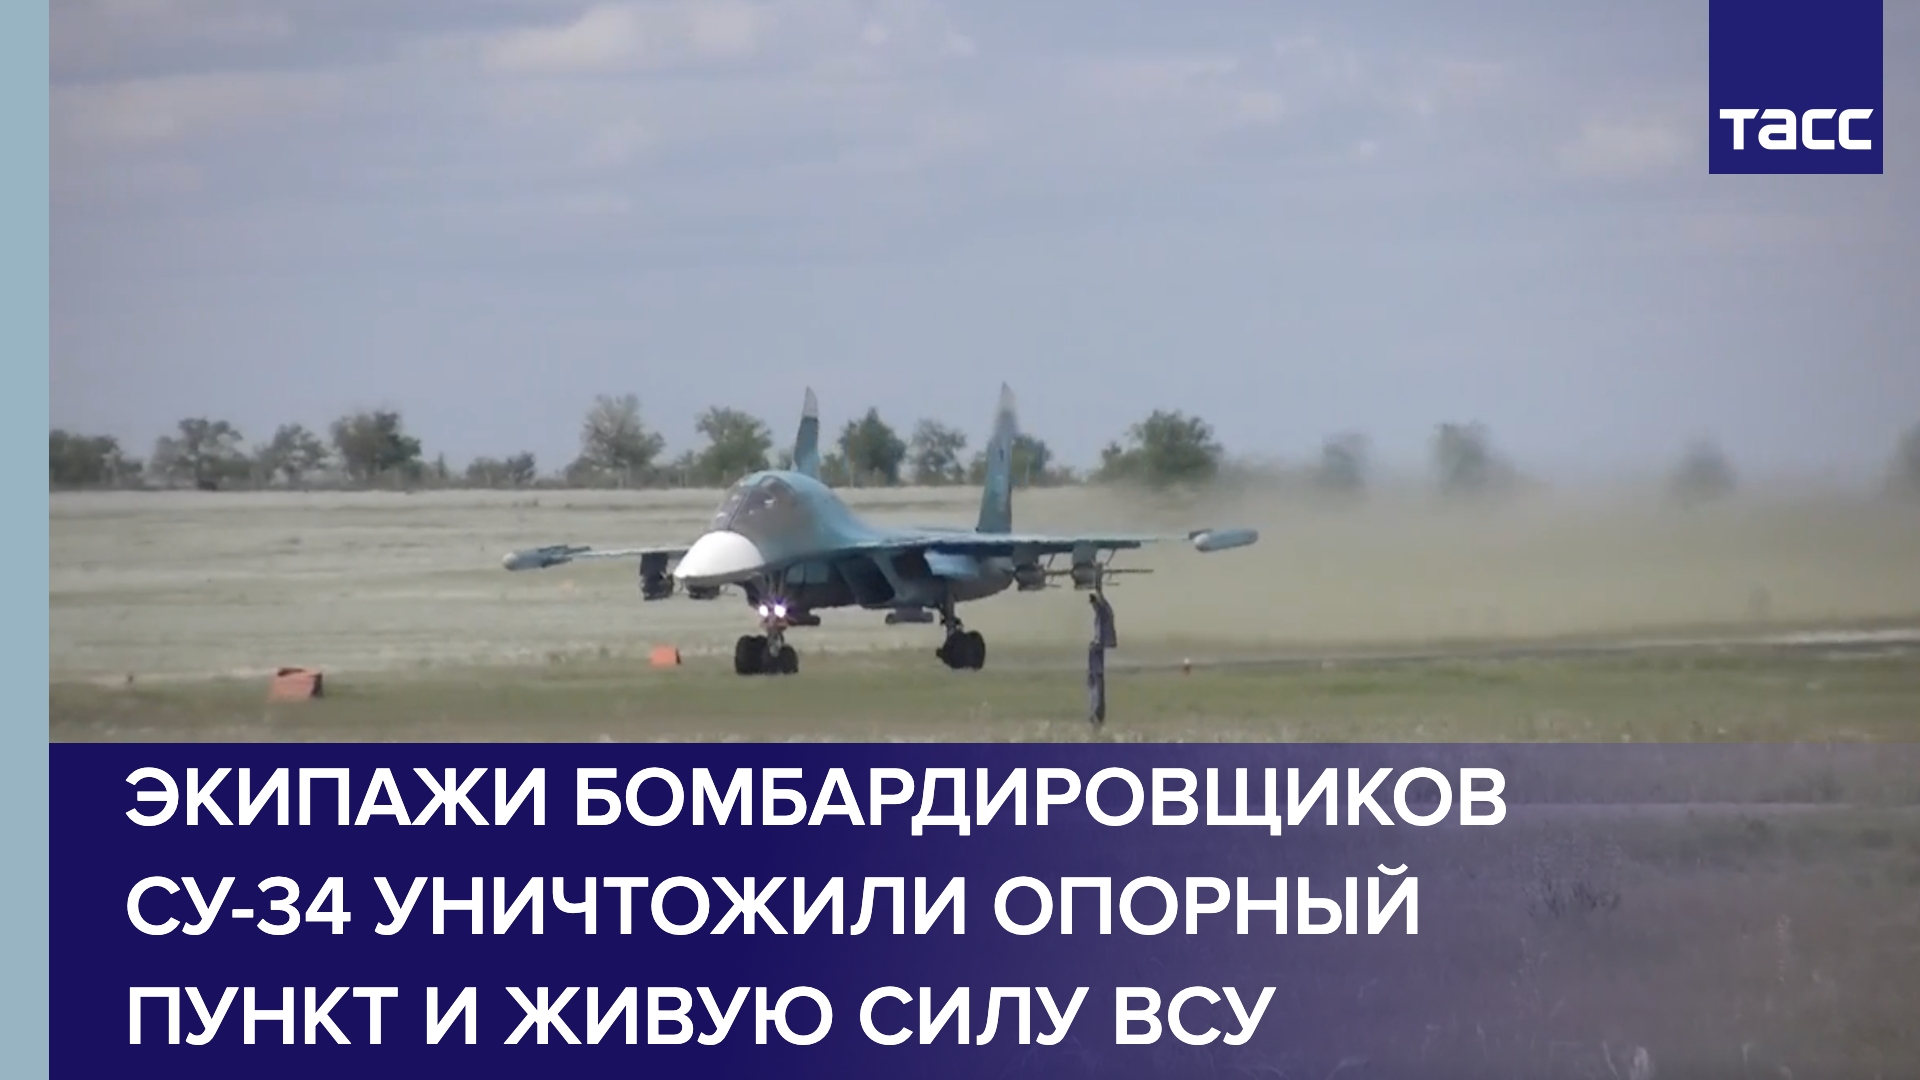 Экипажи бомбардировщиков Су-34 уничтожили опорный пункт и живую силу ВСУ